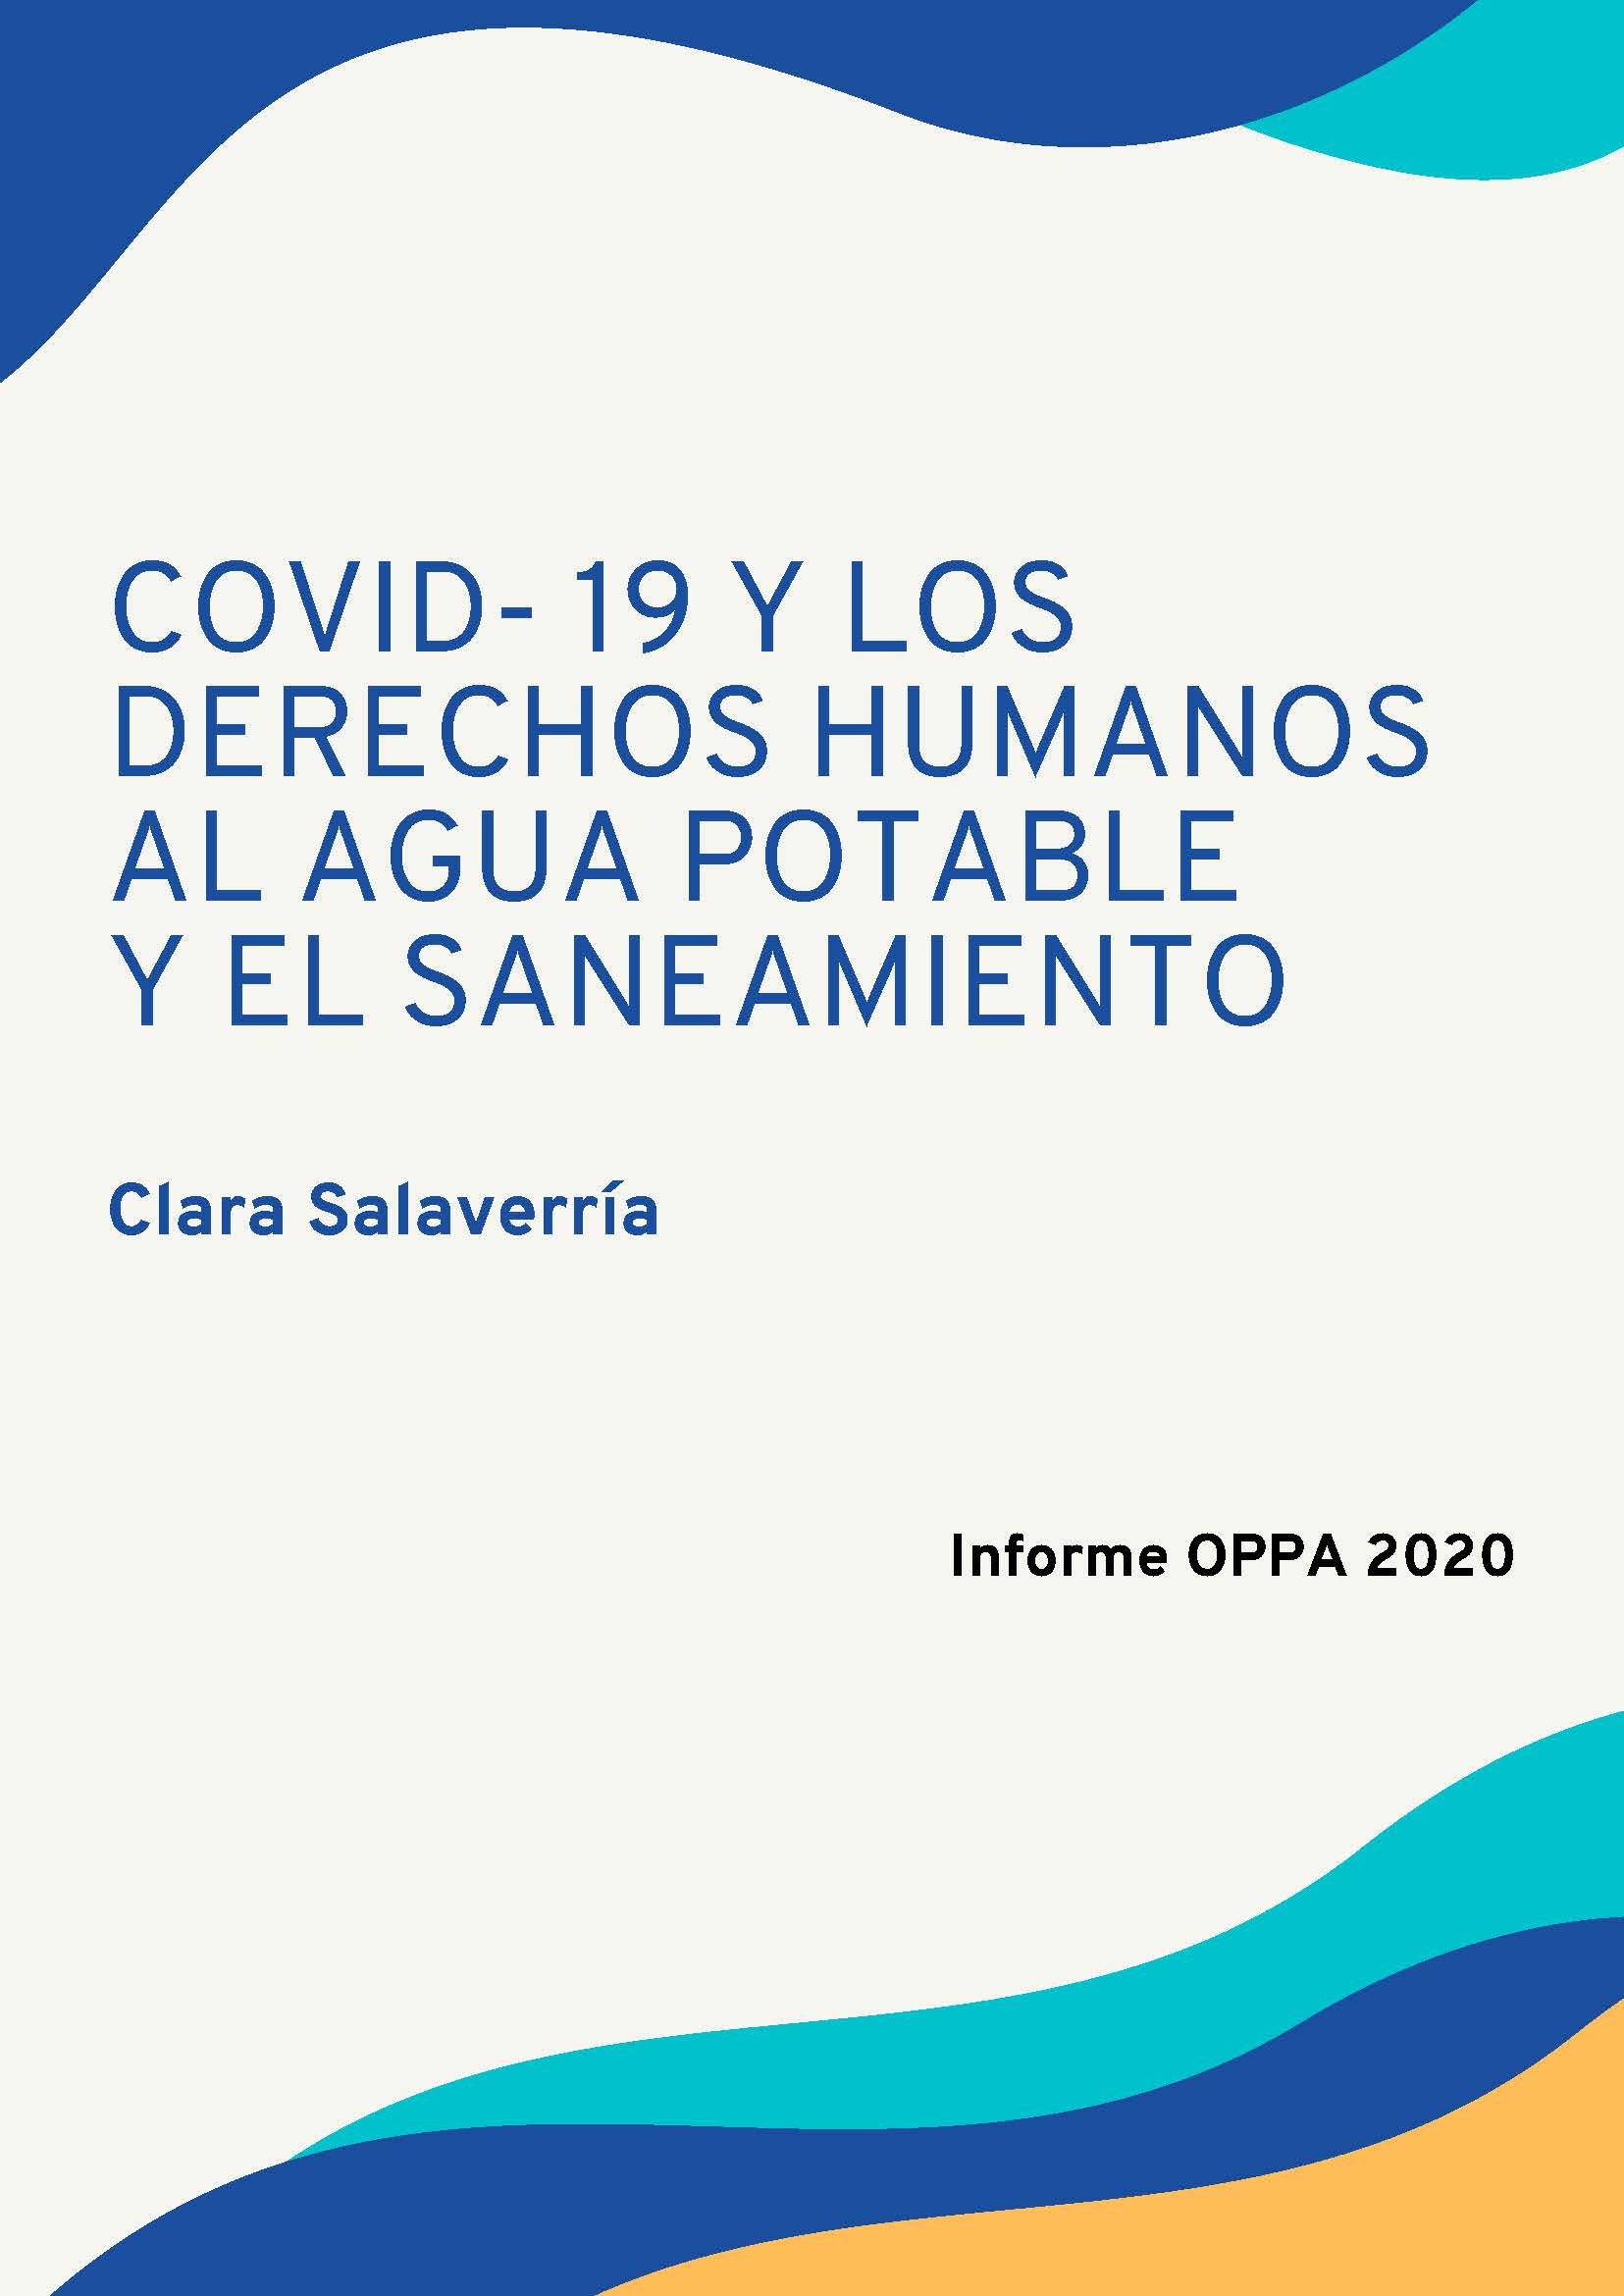 Covid- 19 y los derechos humanos al agua potable y el saneamiento. Informe OPPA 2020